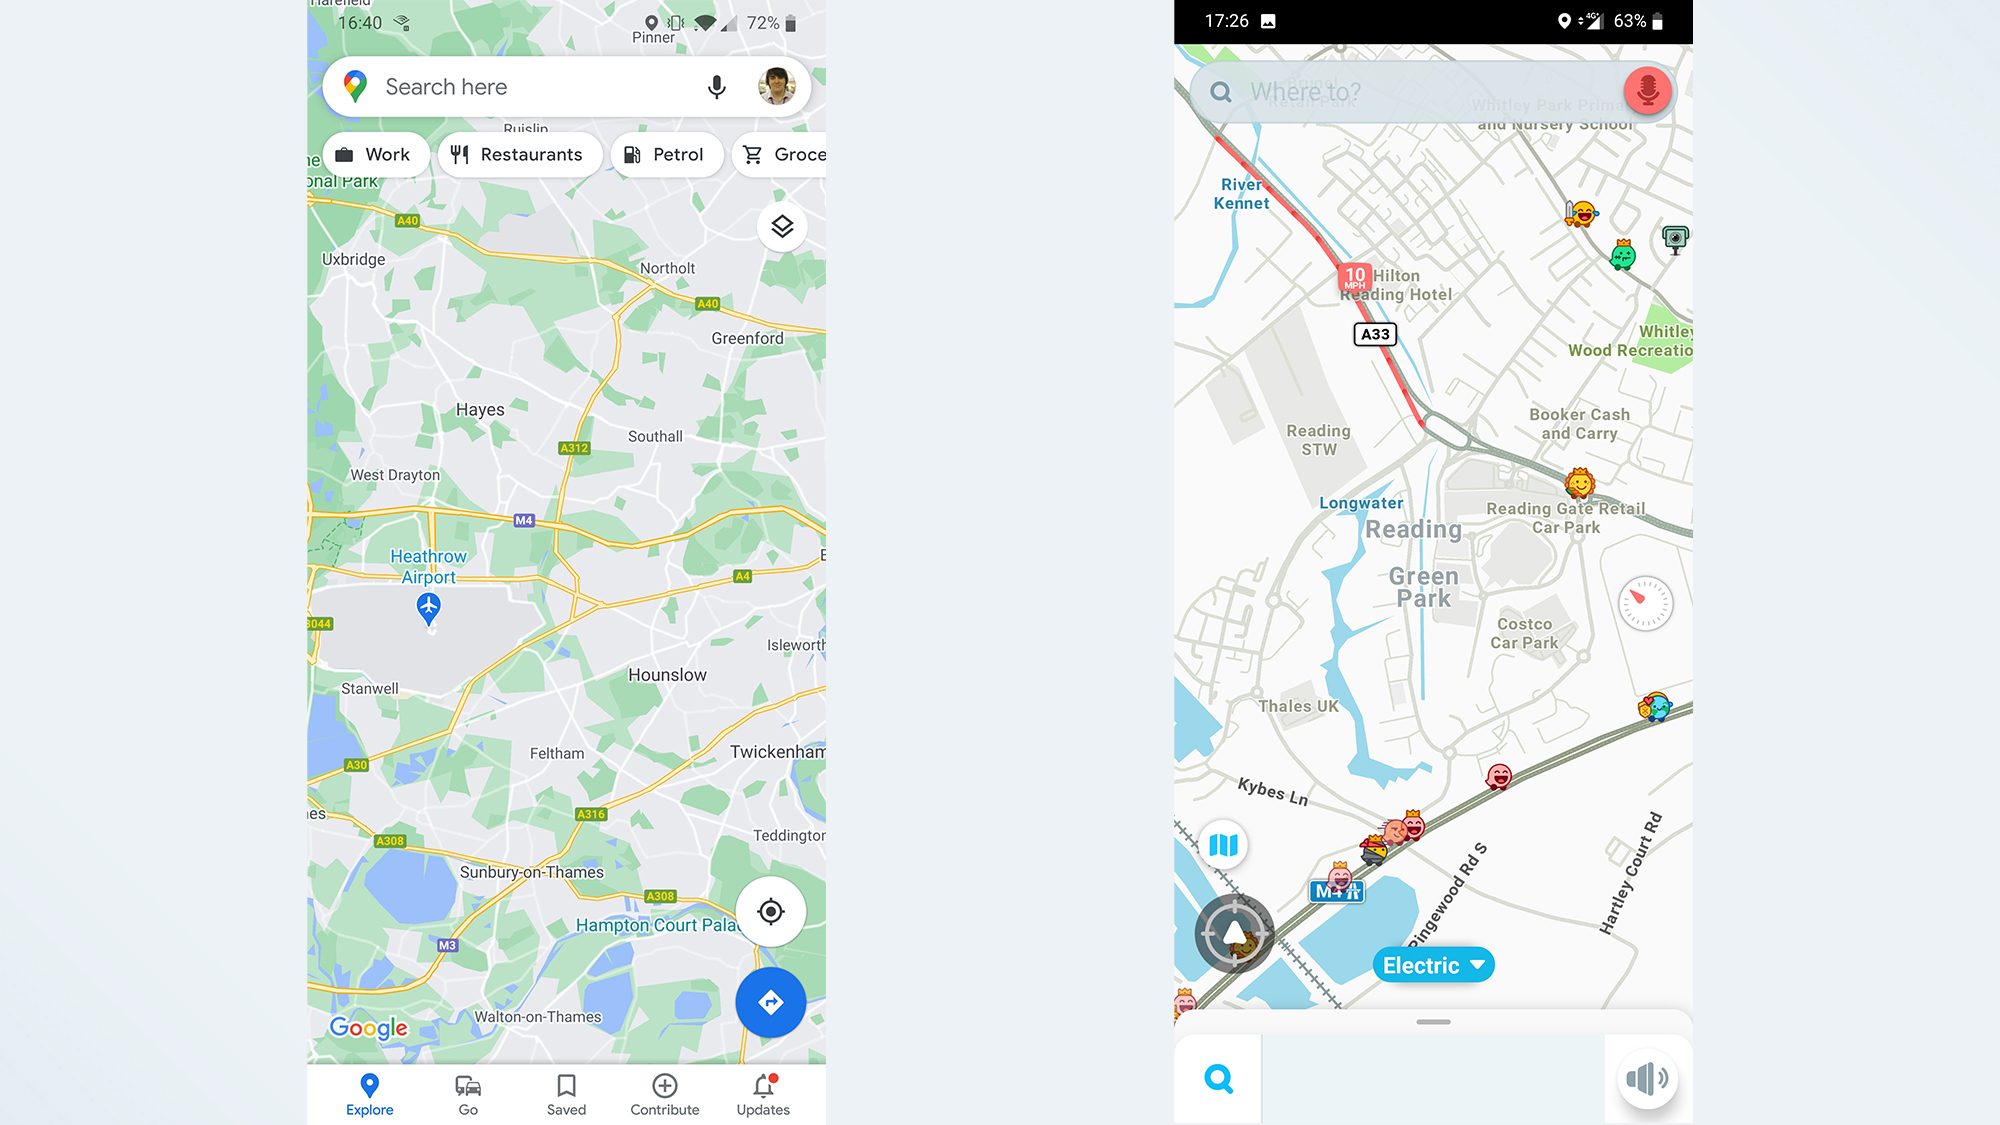 Google Maps vs. Waze interface comparison